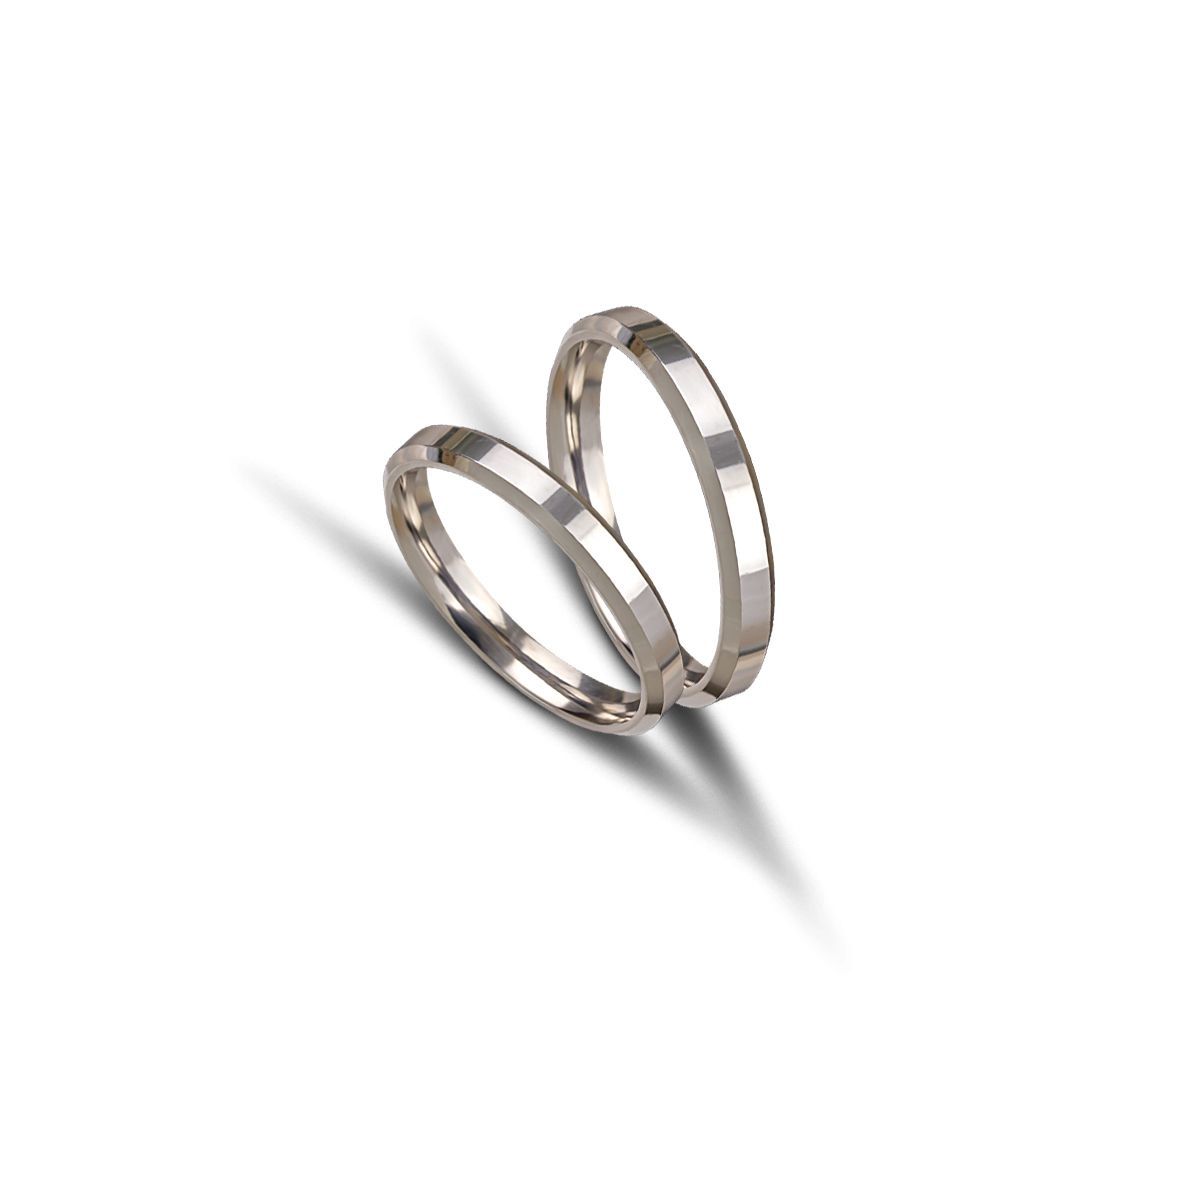 White gold wedding rings 3mm (code VK1006/30)